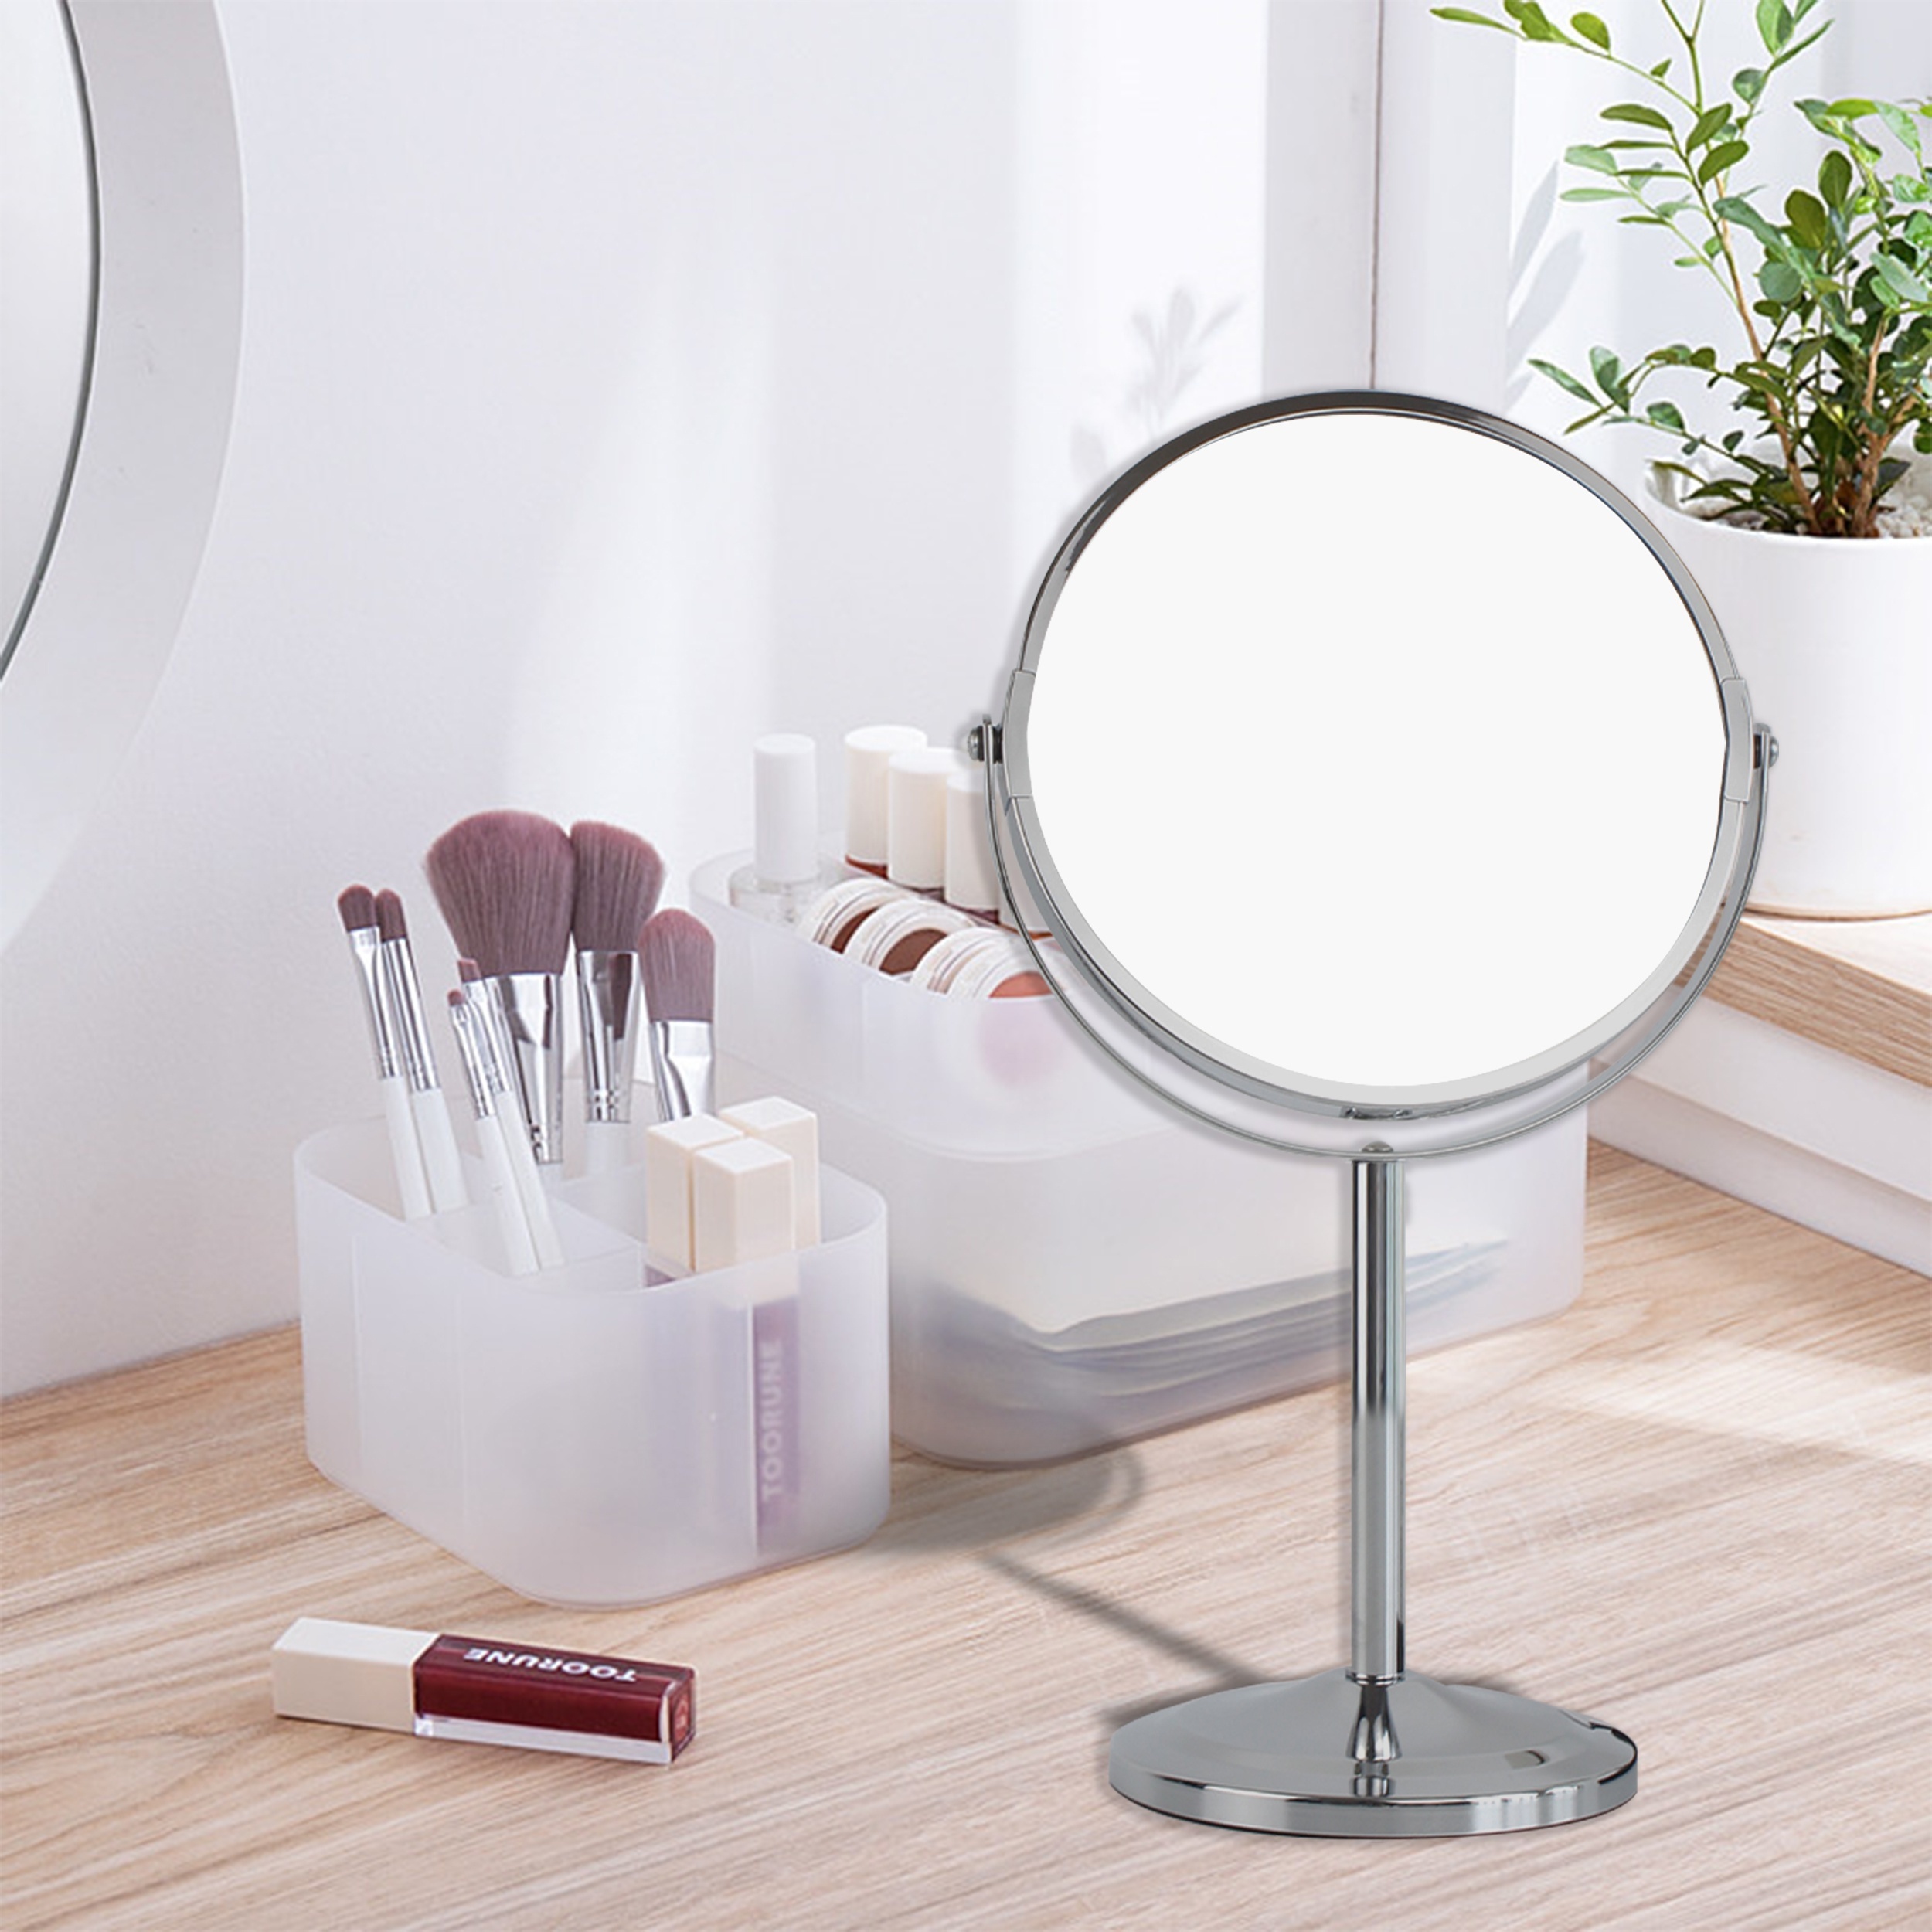 Siete espejos de maquillaje profesionales con luz LED, aumento y